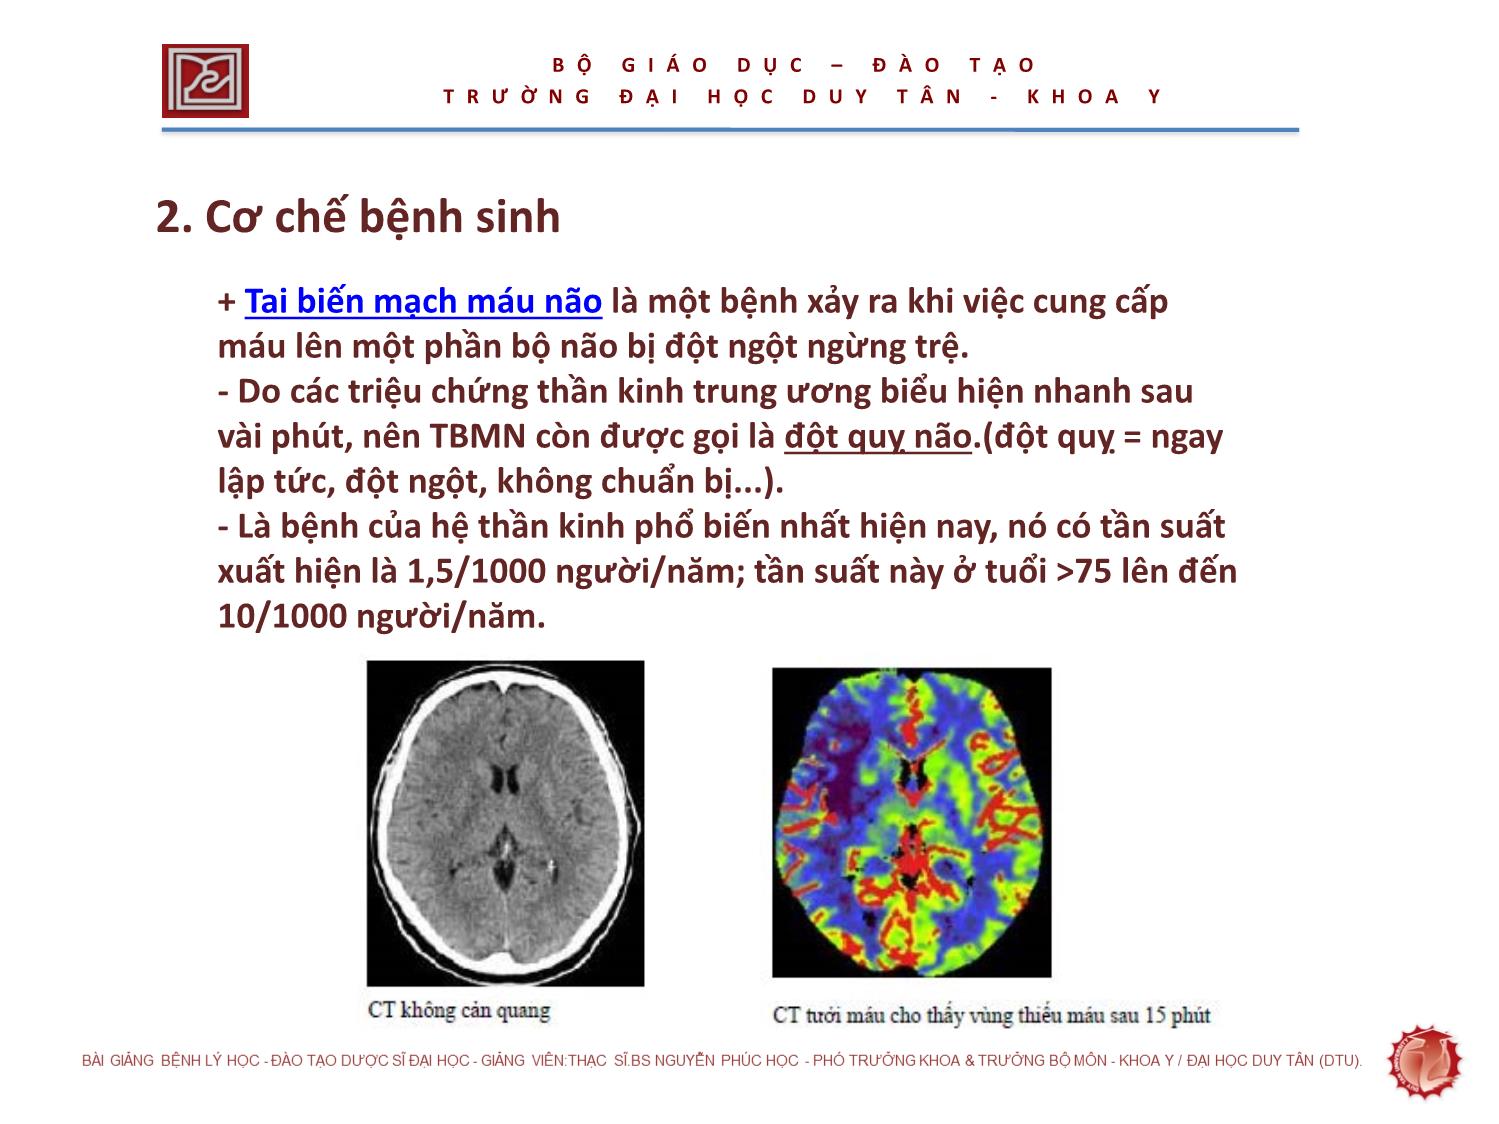 Giáo trình Tai biến mạch não trang 5